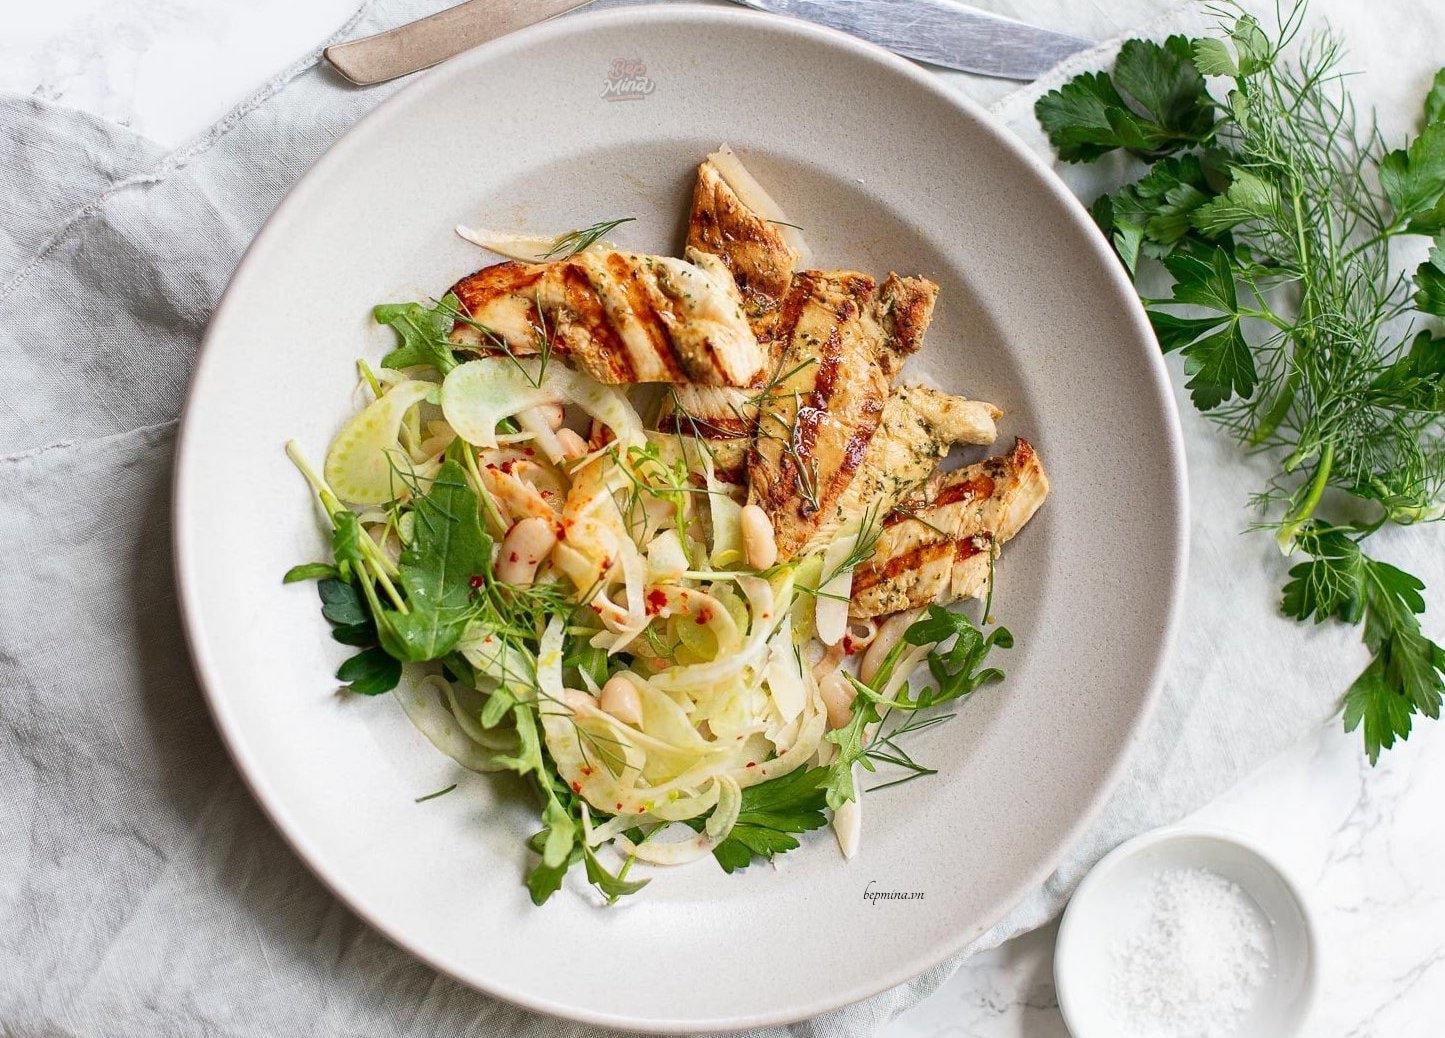 Có thể thay thế ức gà bằng loại thịt nào khác để làm salad giảm cân?
